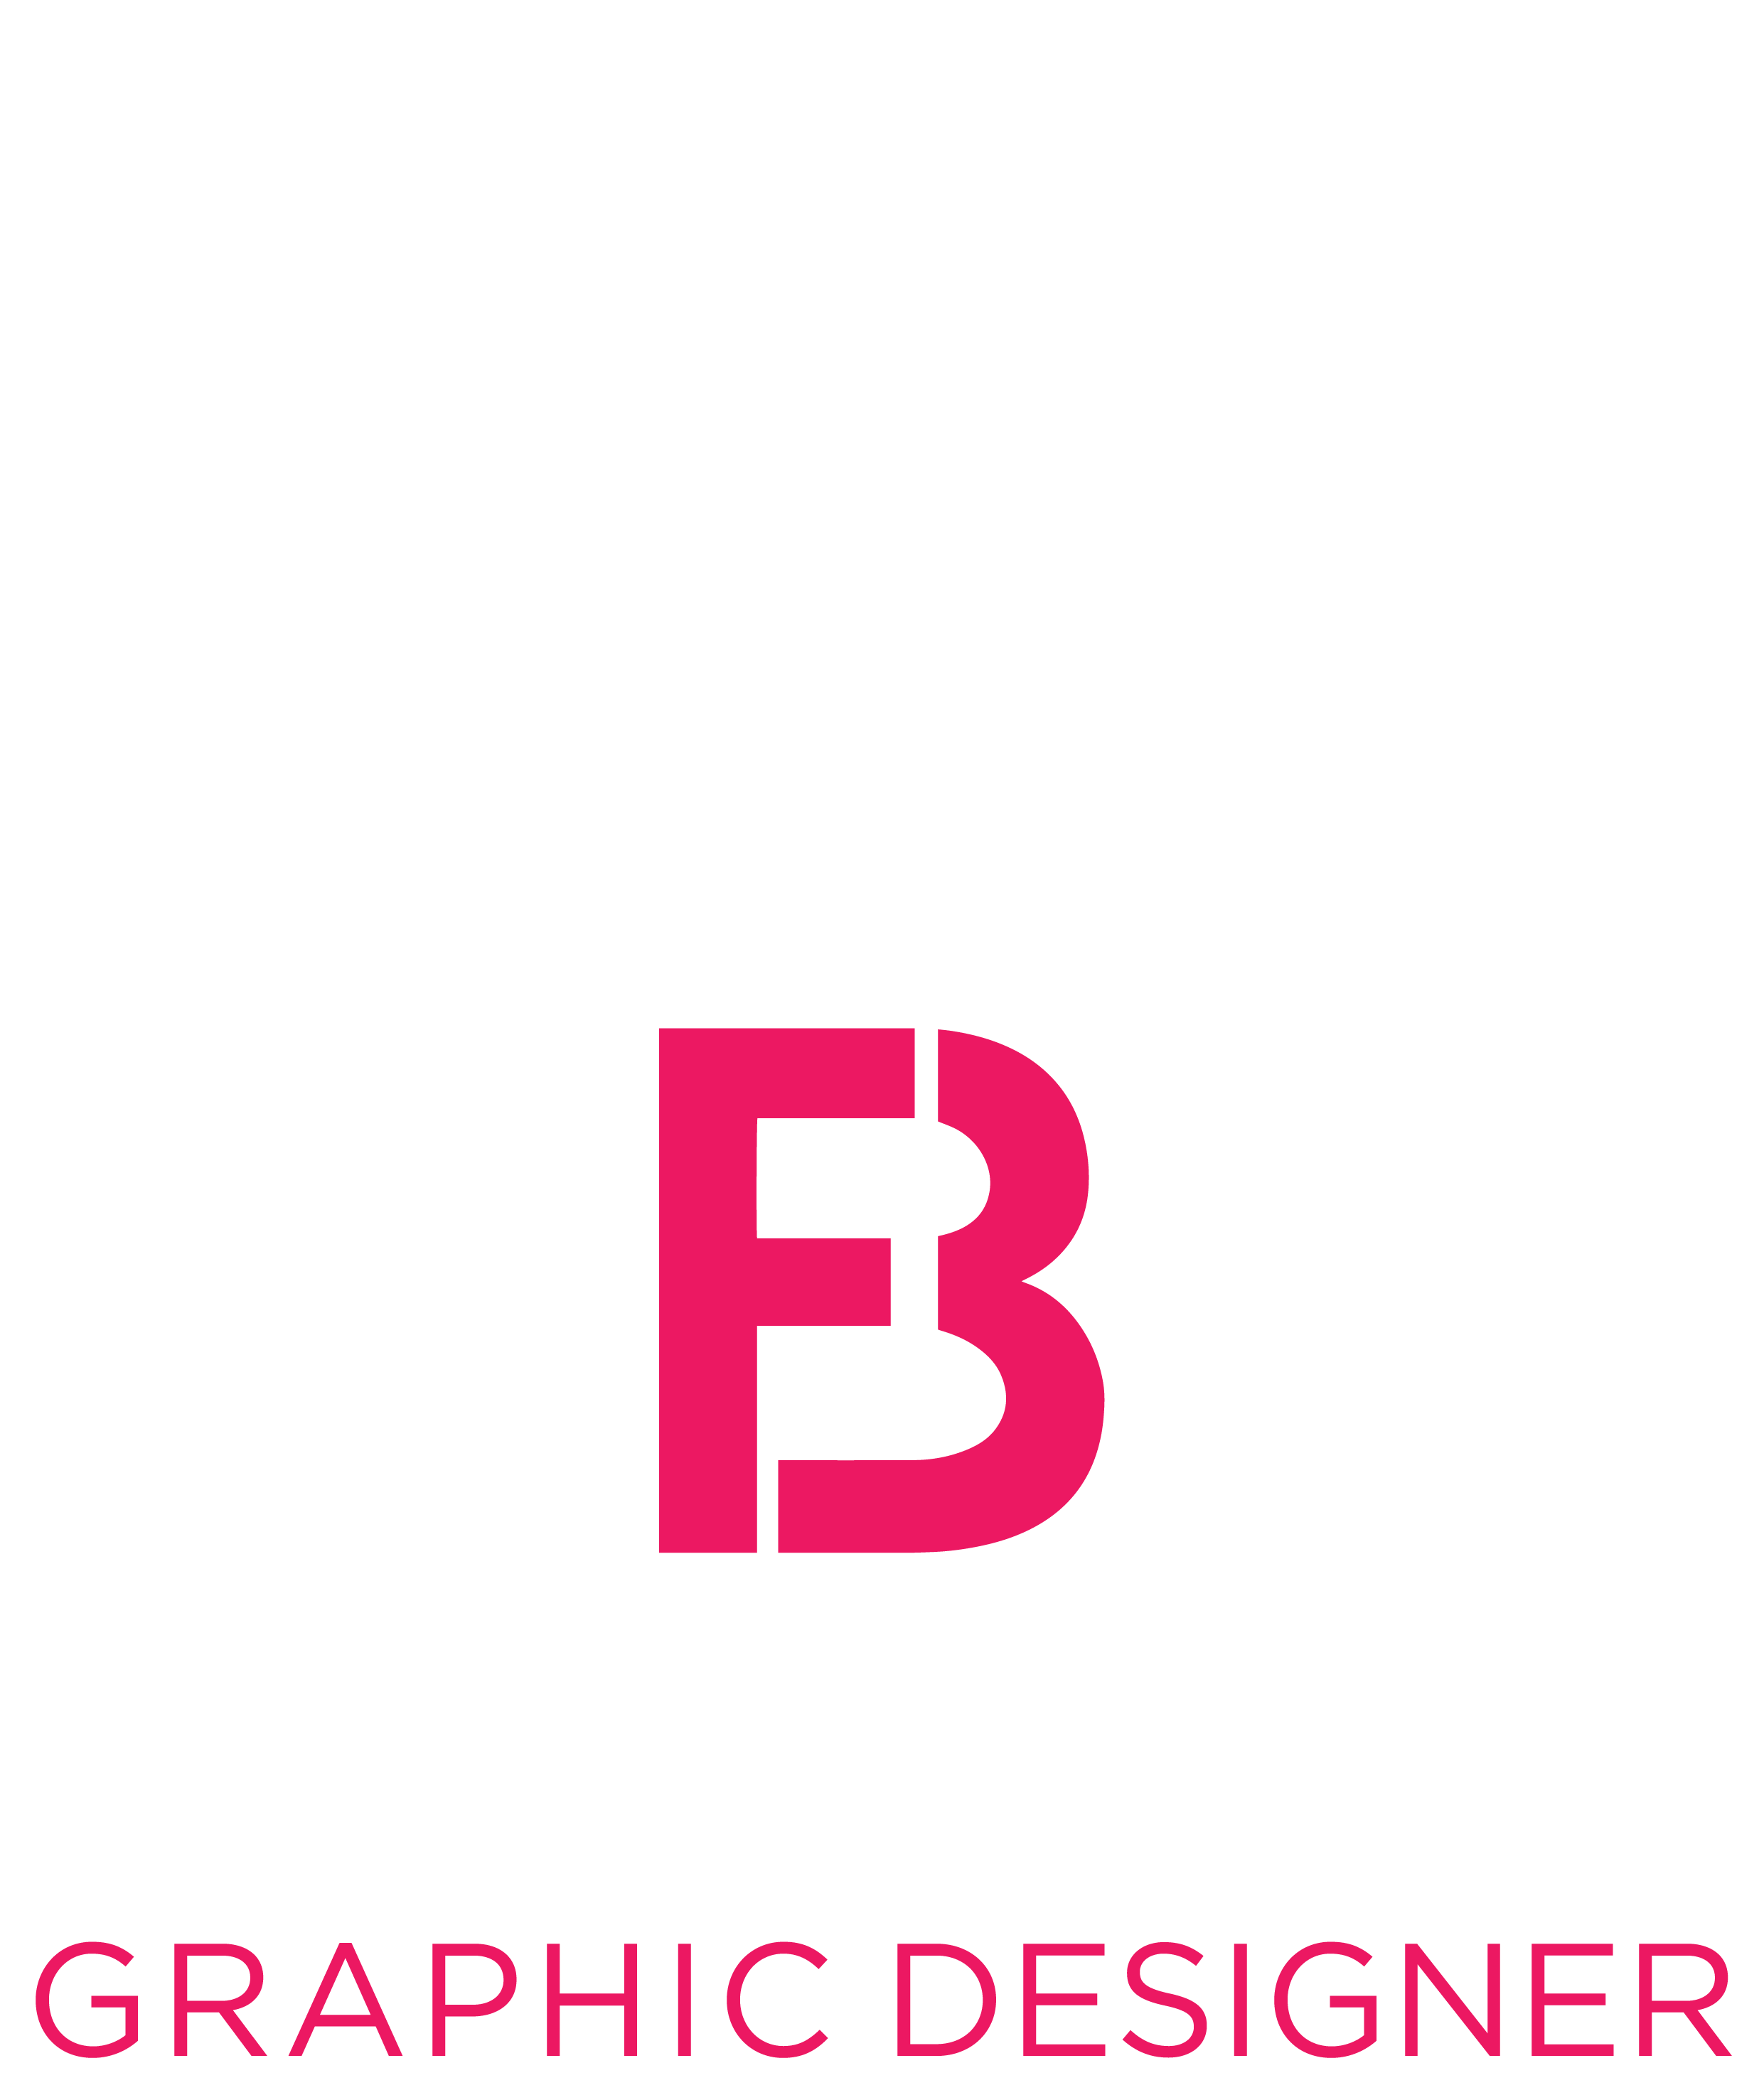 Byron Fegen